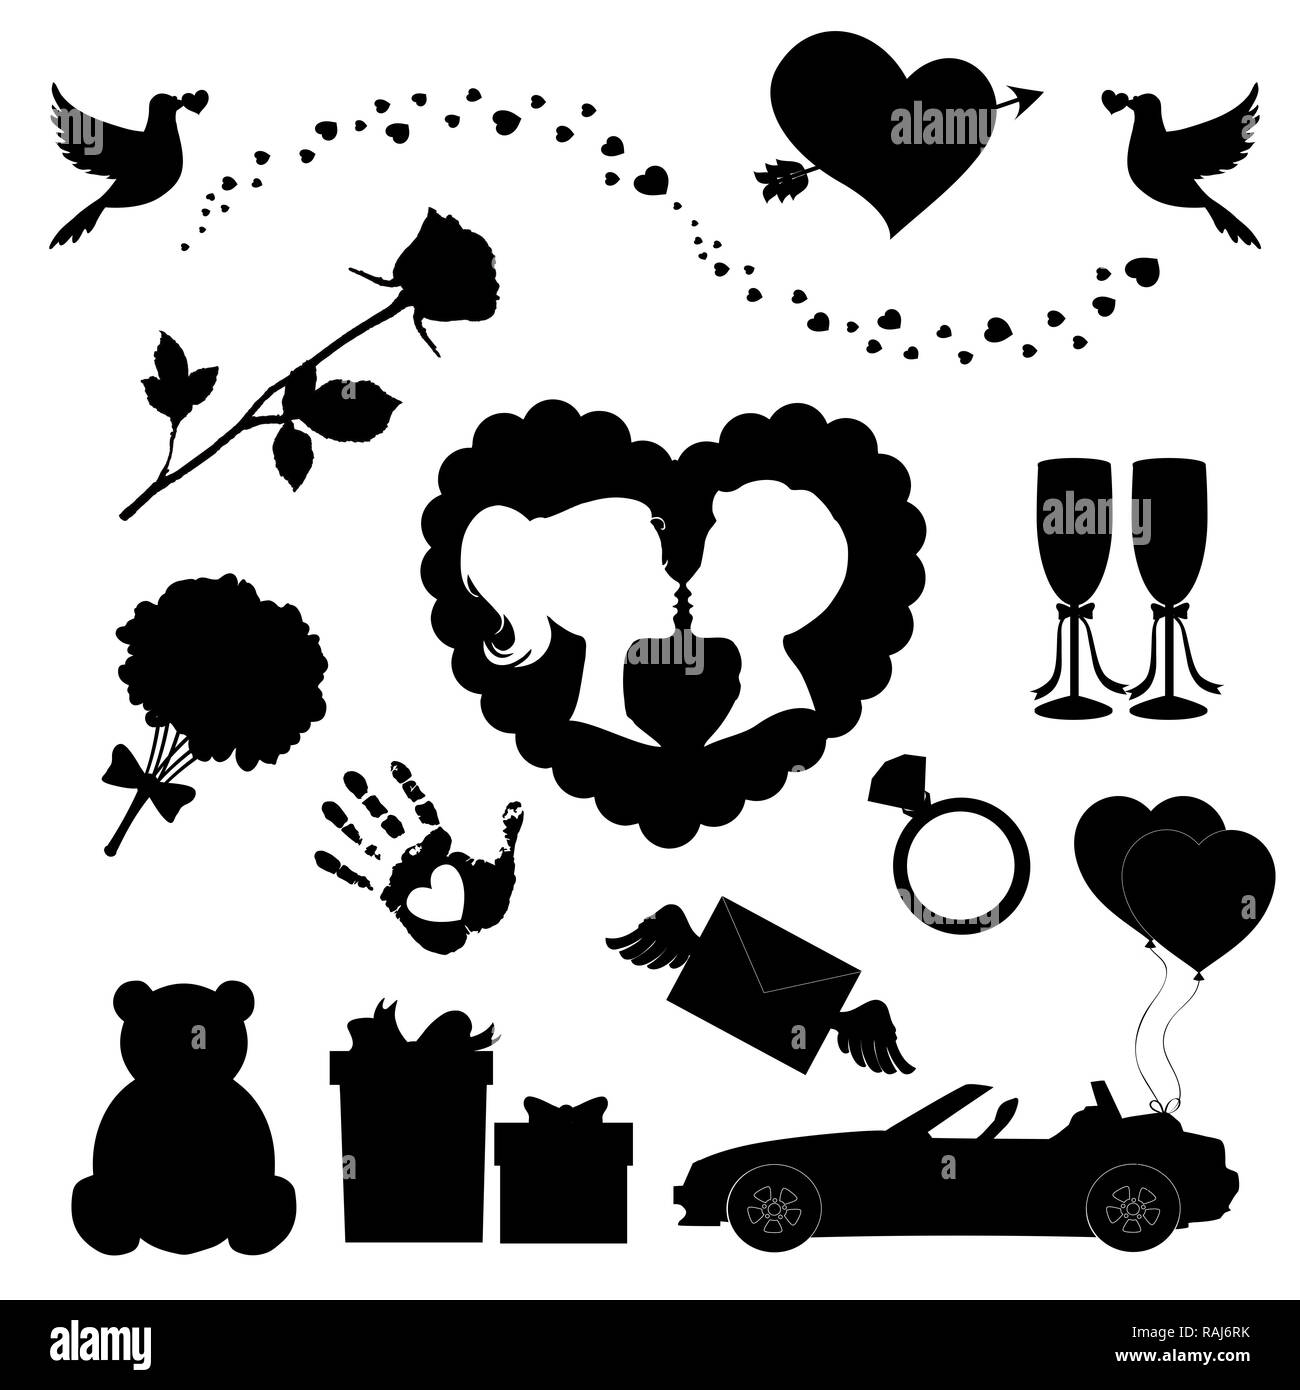 Liebe Symbole 14 editierbare gefüllt Valentine silhouette Schilder. Teddybär, Herzen, Ballons, Pfeil Herz, Rose, Kuss Paar, Just married Auto, Bal Stockfoto